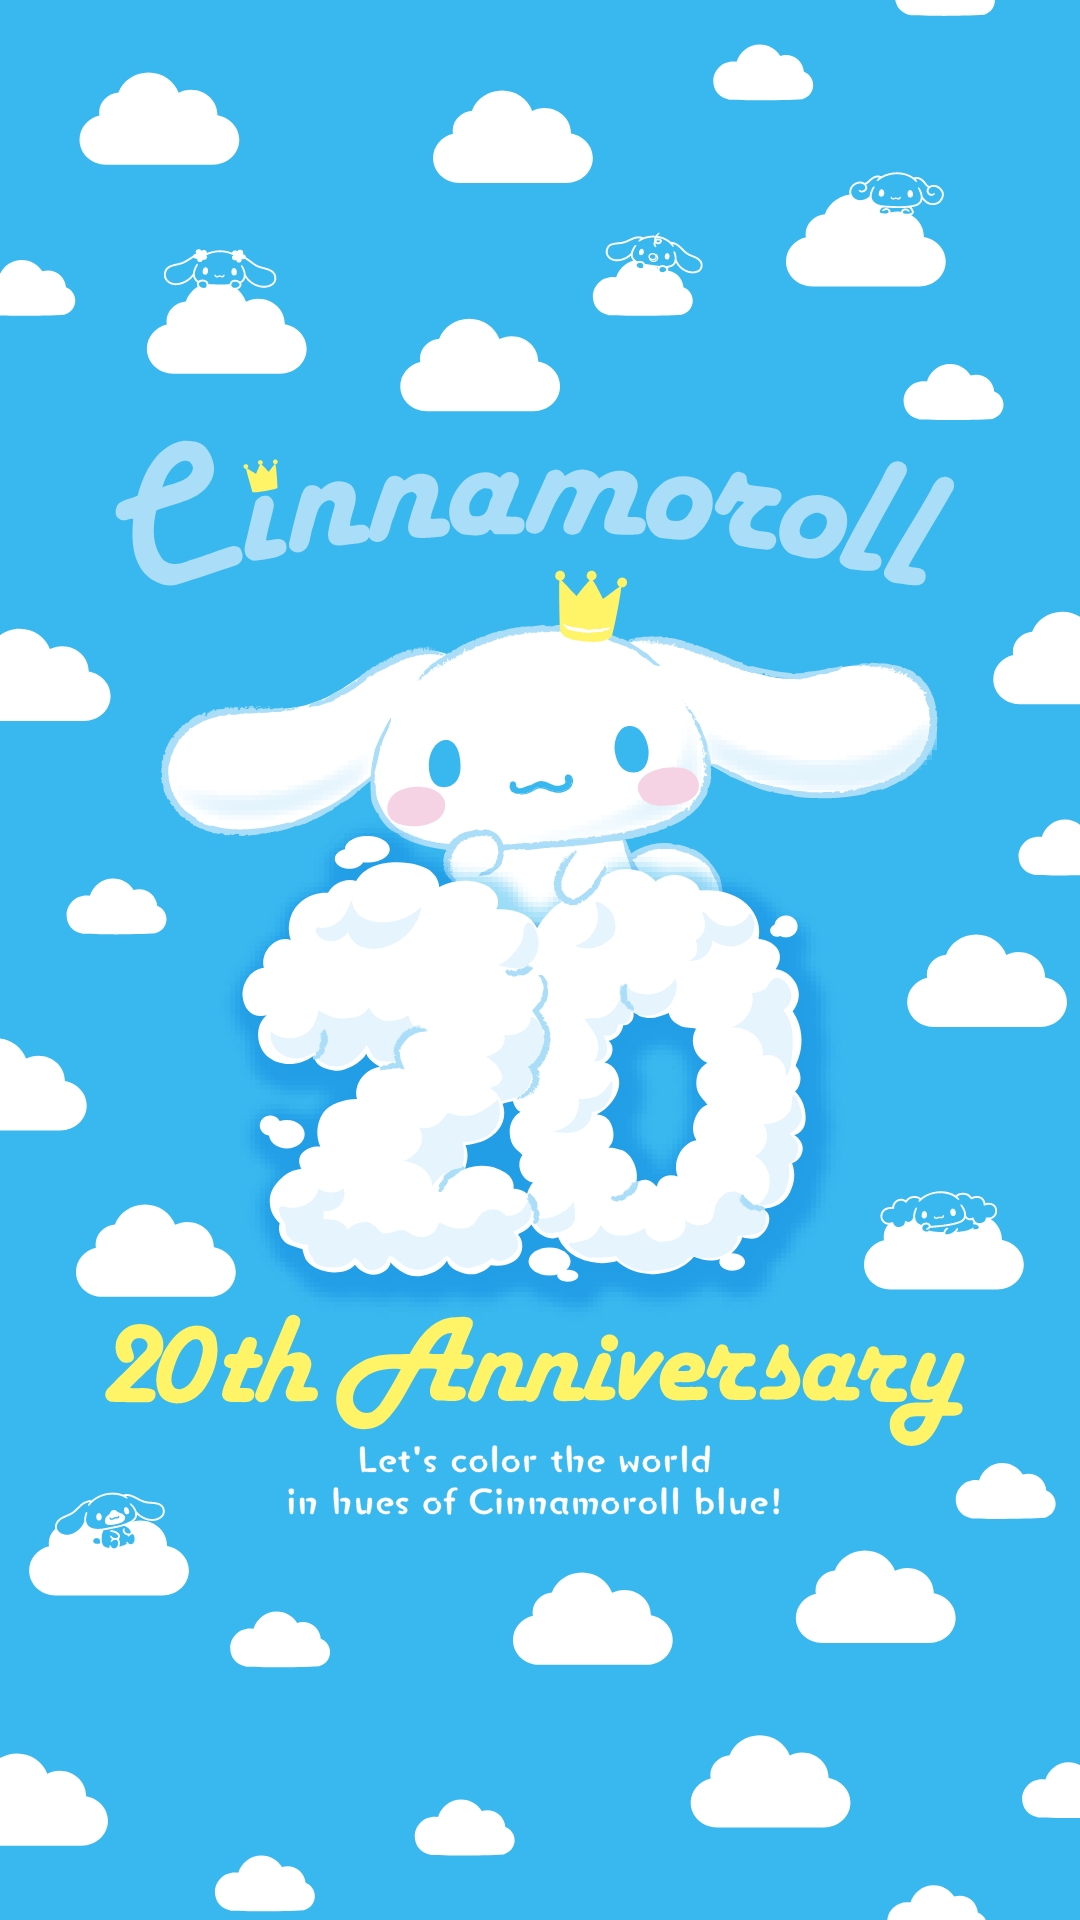 シナモンミュージアム | Cinnamoroll 20th Anniversary Special Site 